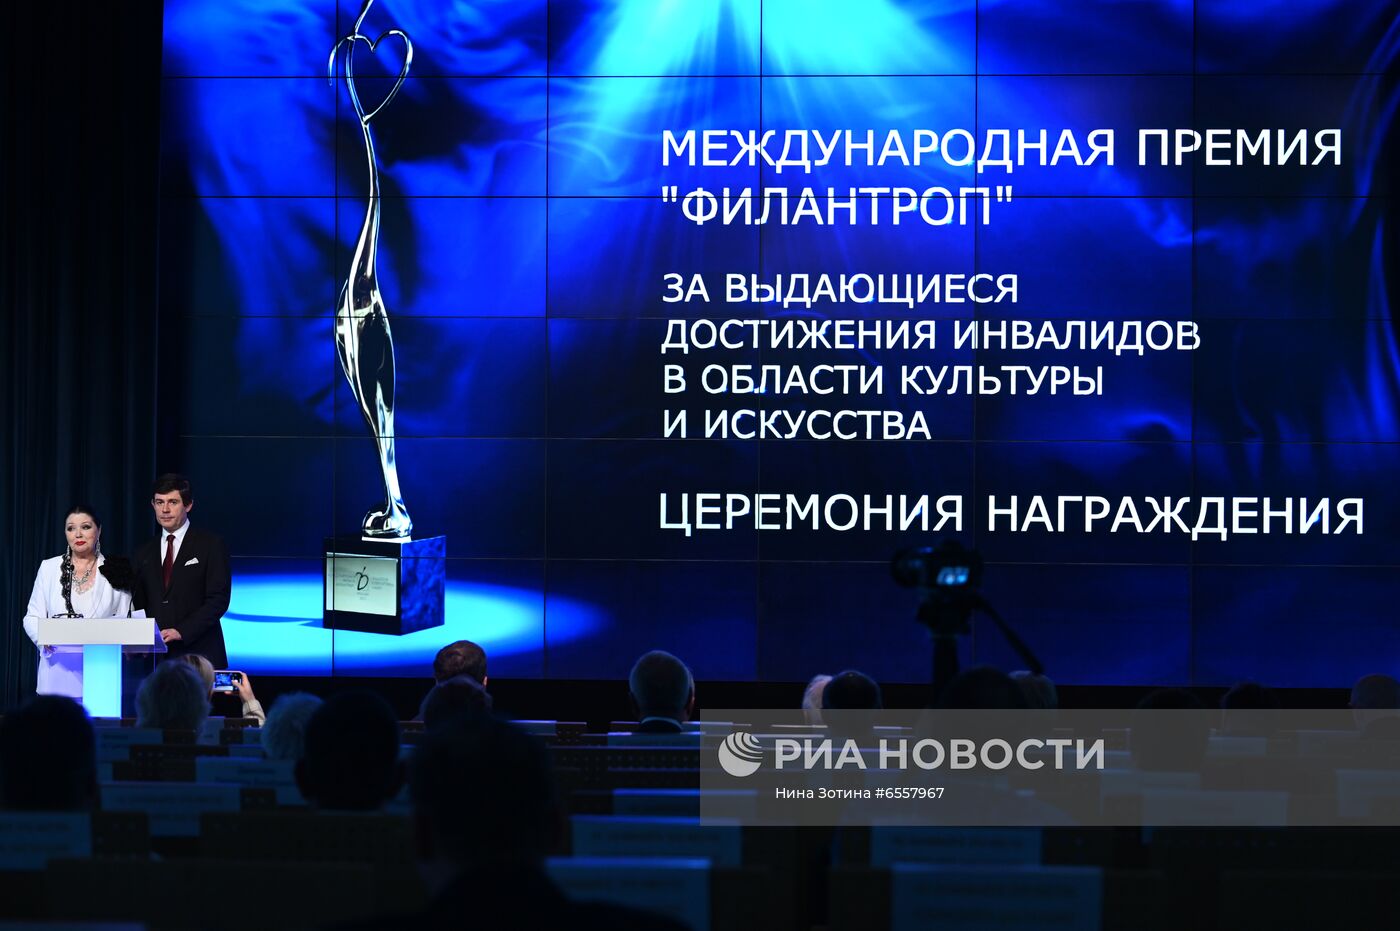 XI официальная церемония вручения Международной премии "Филантроп"